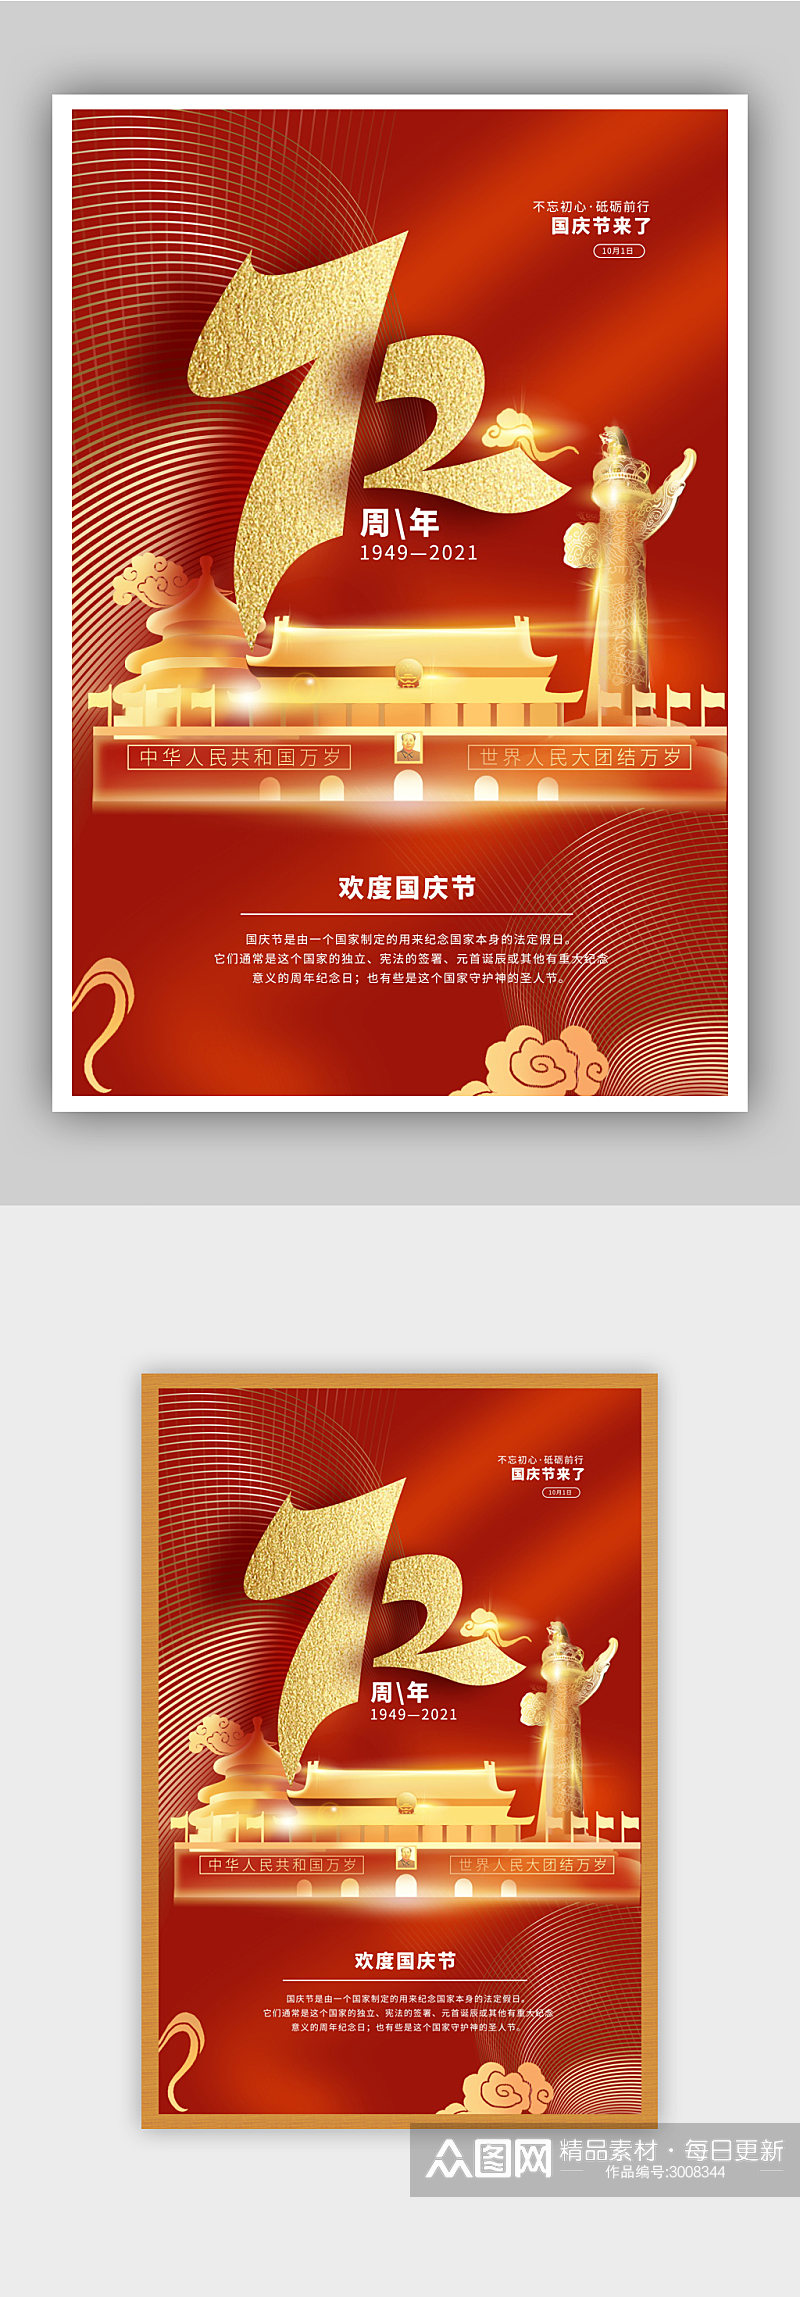 红色喜庆国庆节海报素材